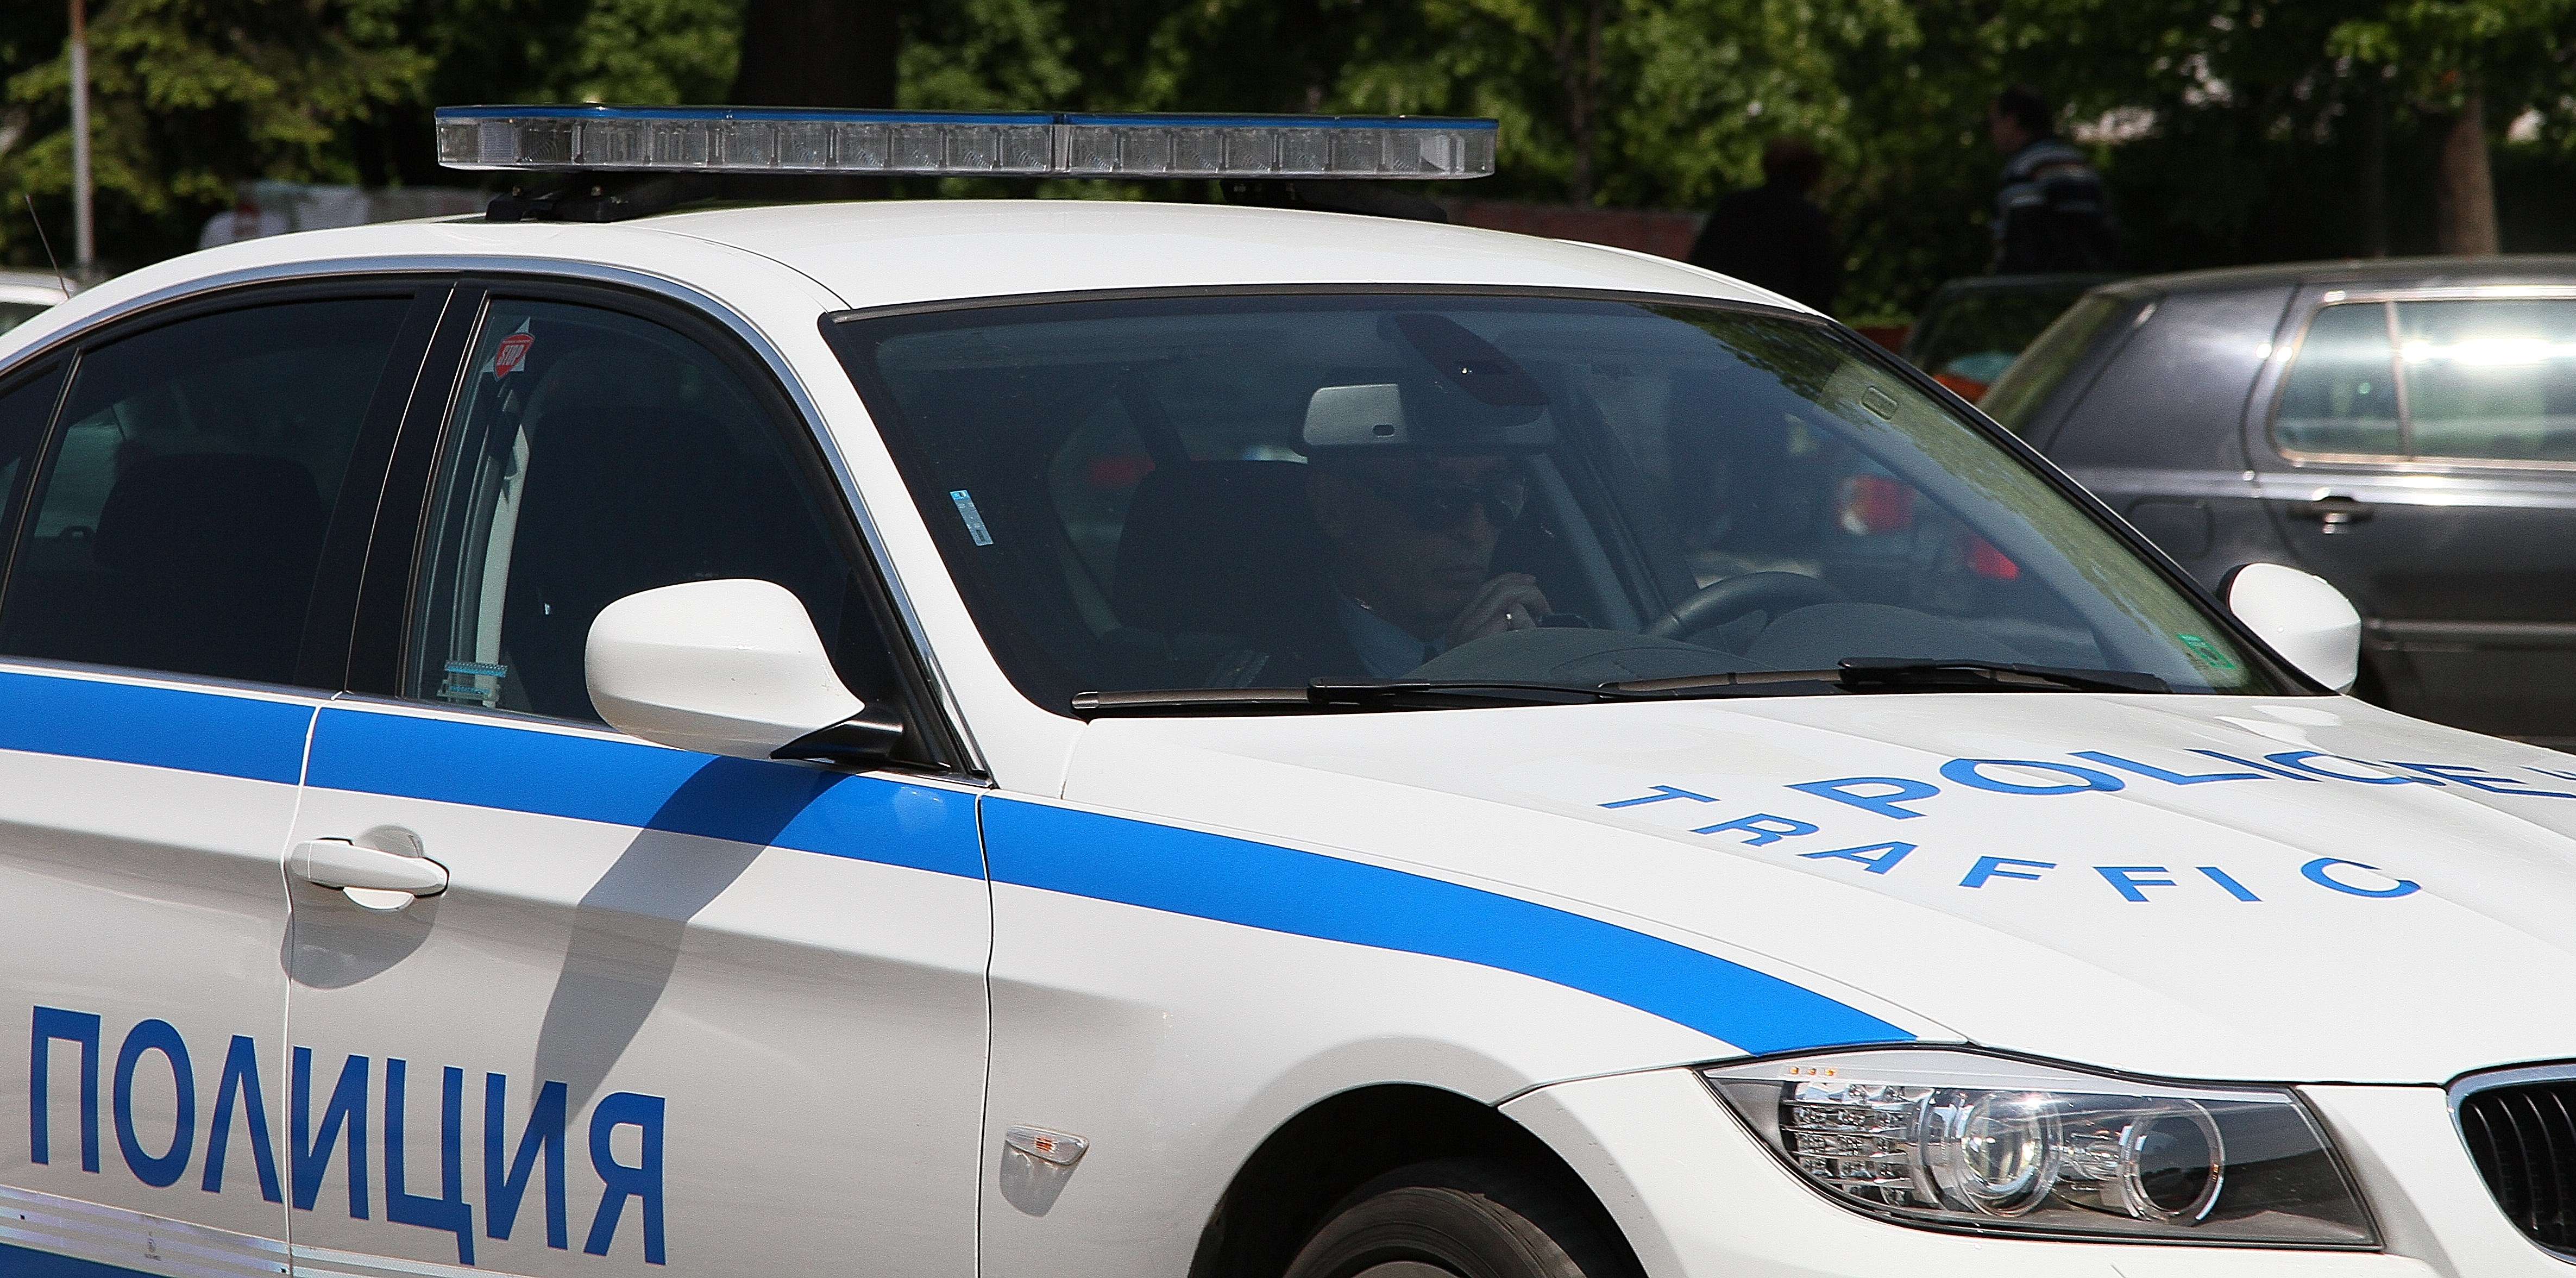 Към 20.15 часа, чрез тел. 112 в полицията е постъпил сигнал за изстрели в района на ул. "Бойчо войвода"